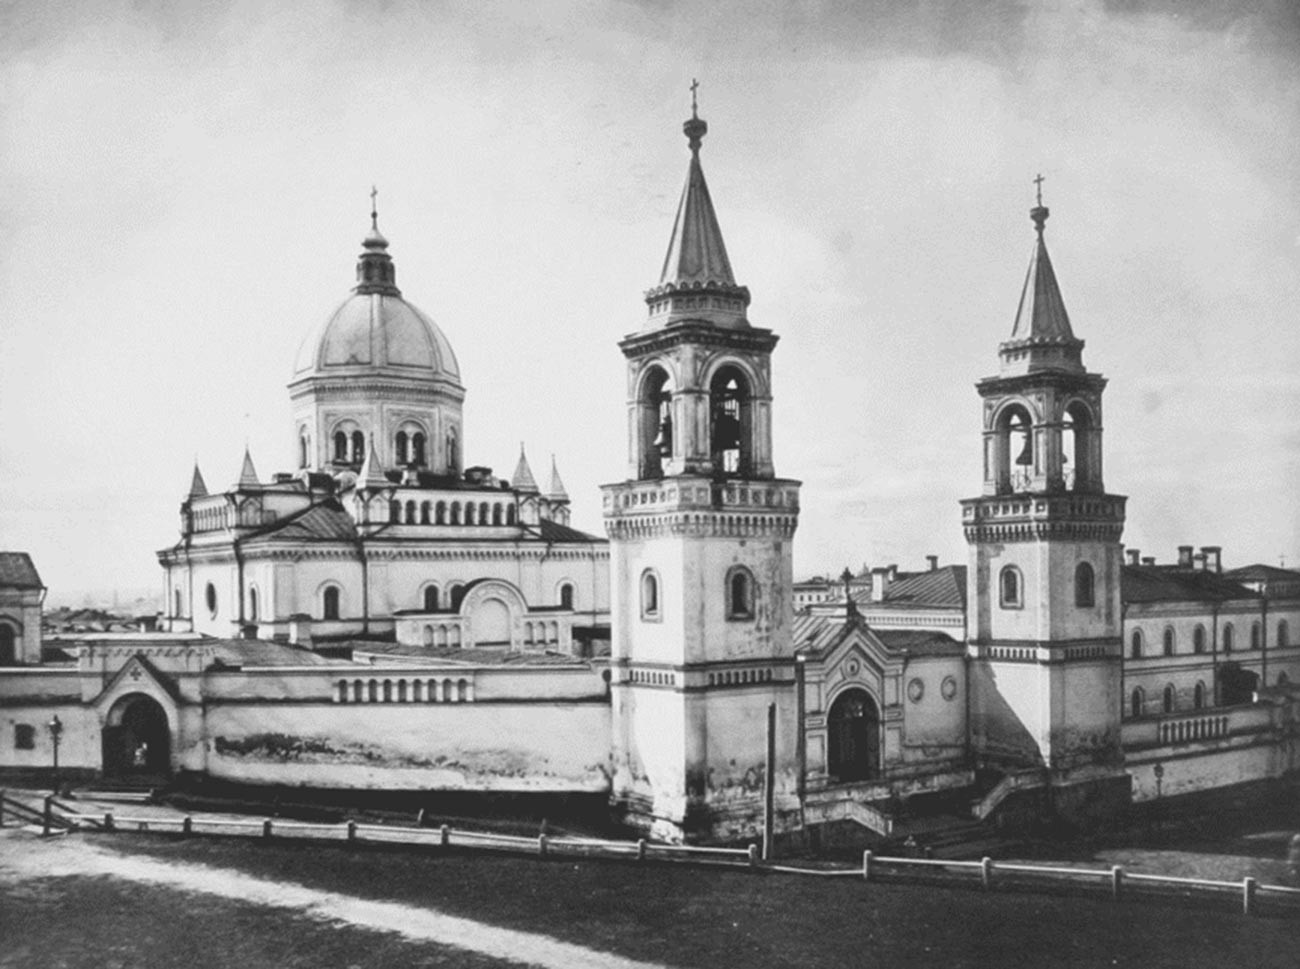 Das Iwanowski-Kloster, in dem Sophias Ehemann in den 1920er Jahren in einem Konzentrationslager festgehalten wurde.